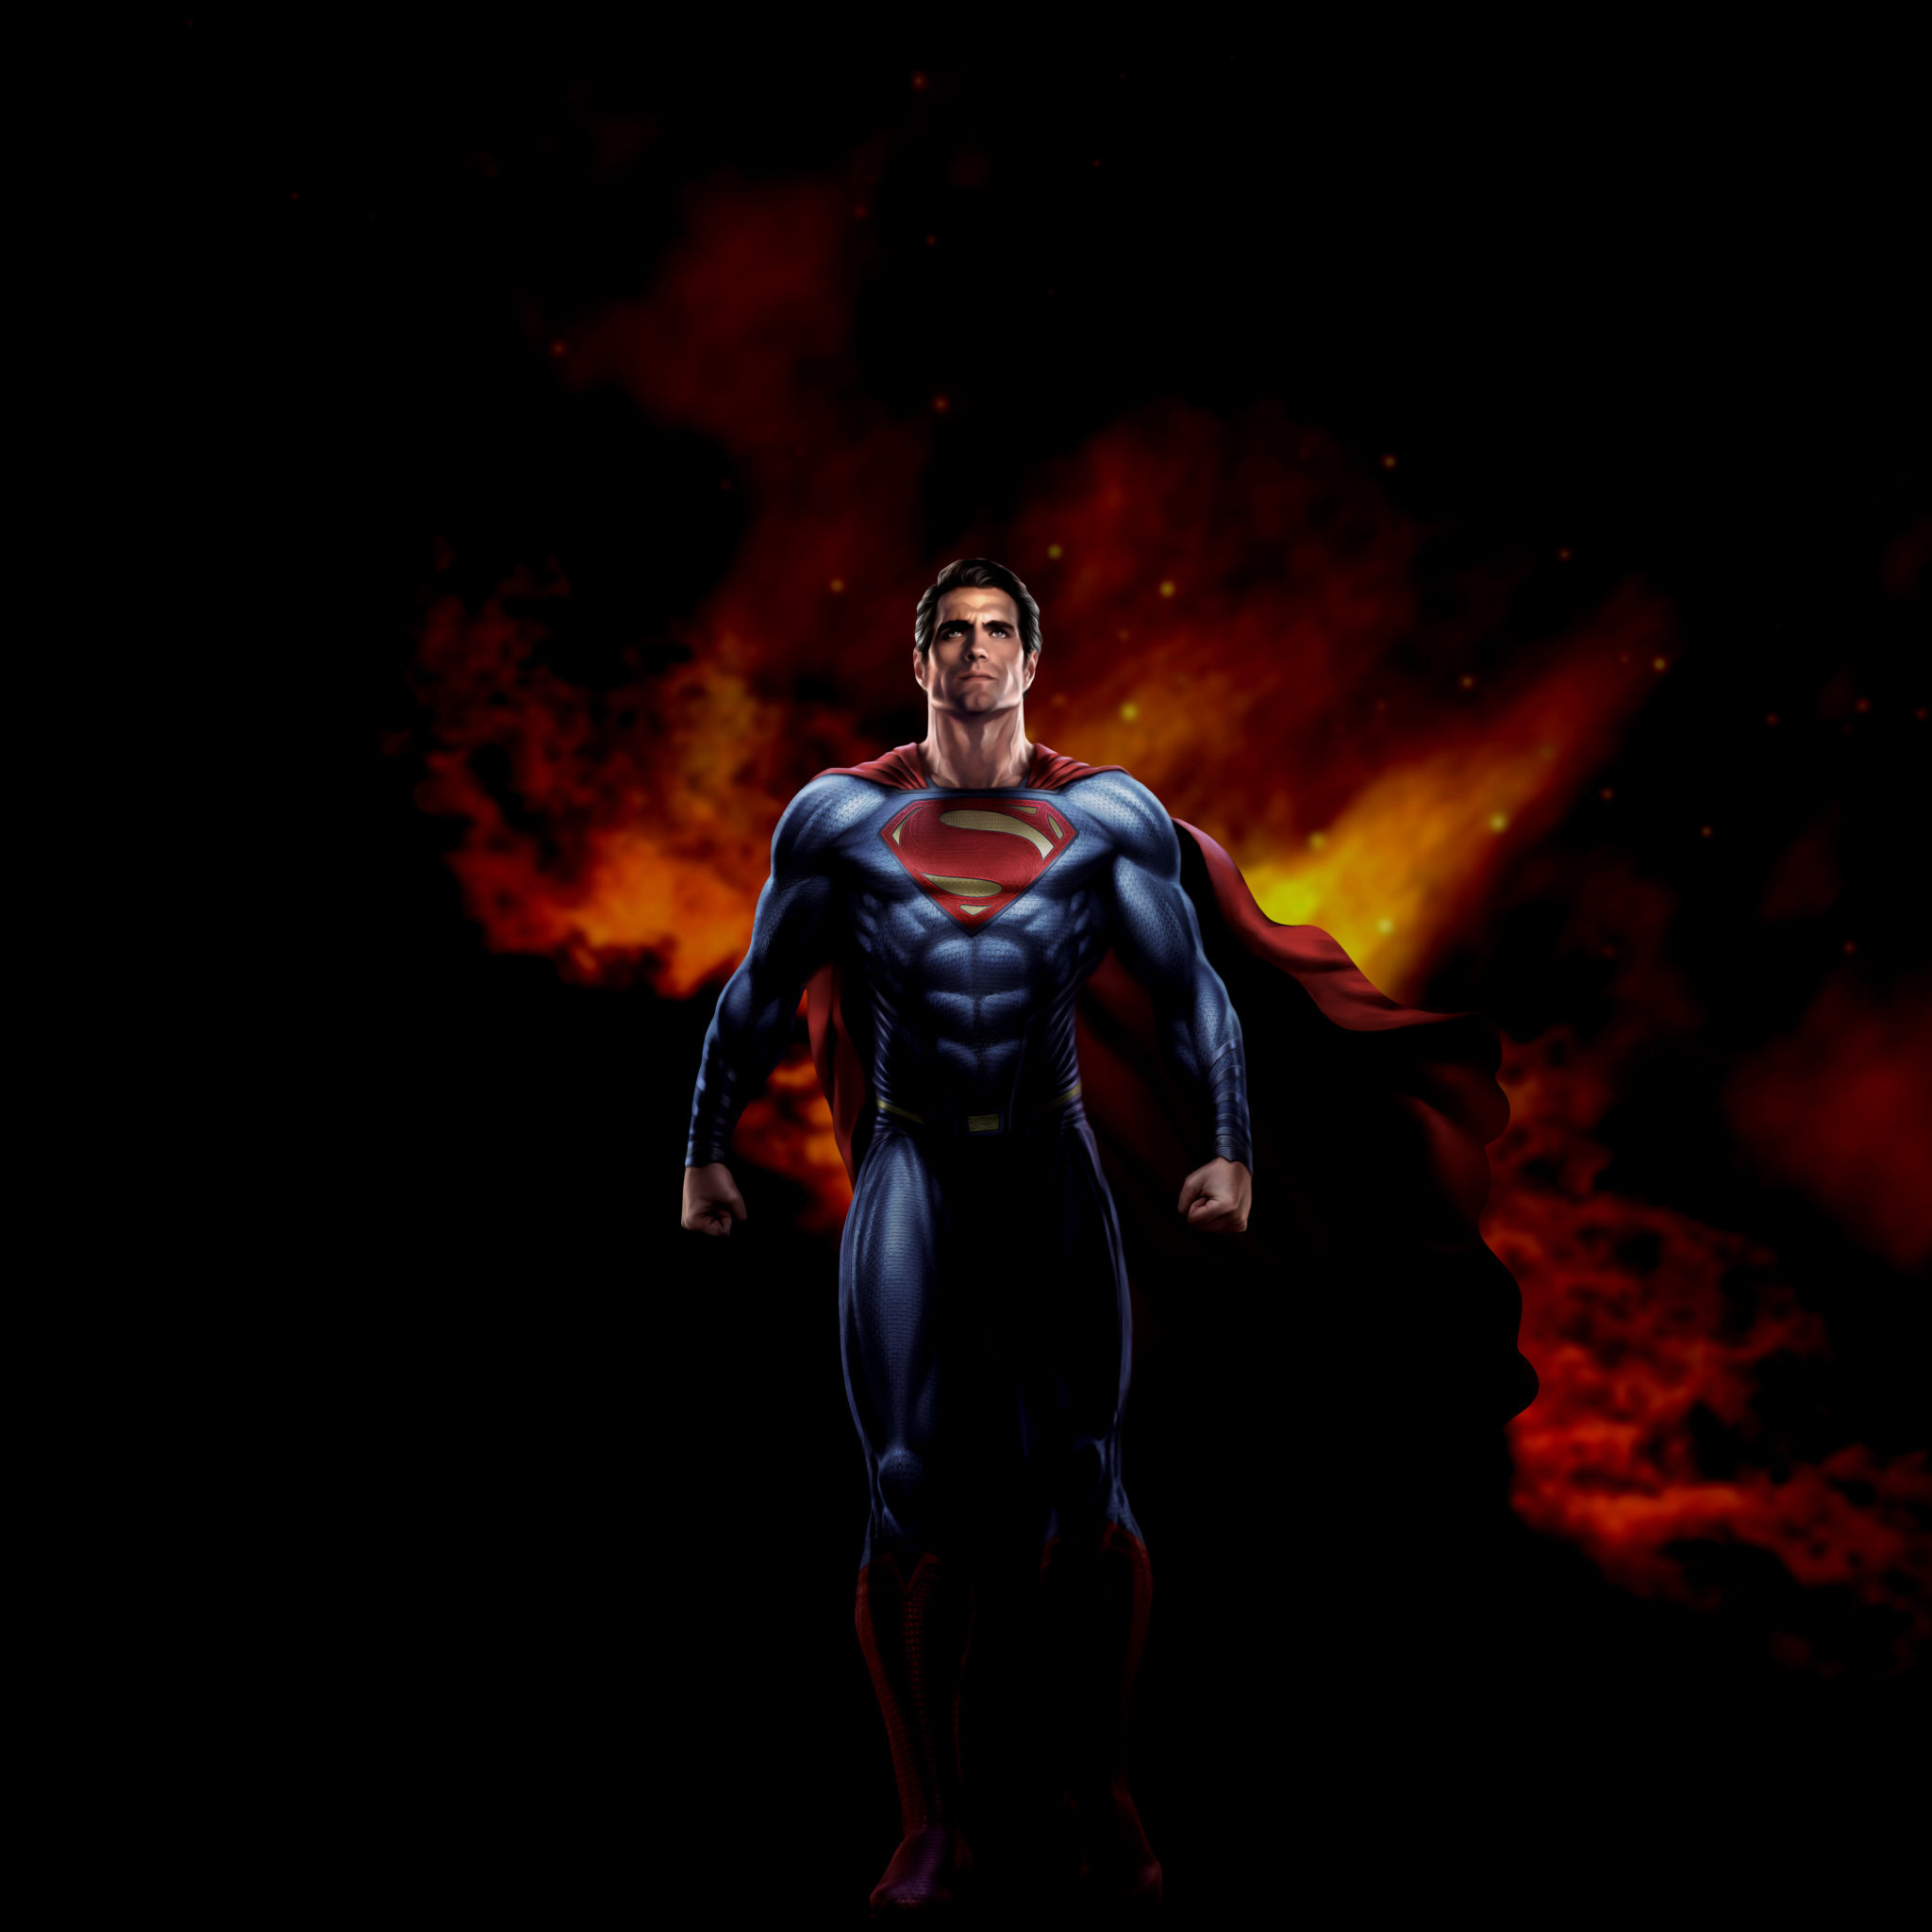 supereroe wallpaper hd,supereroe,superuomo,personaggio fittizio,lega della giustizia,action figure